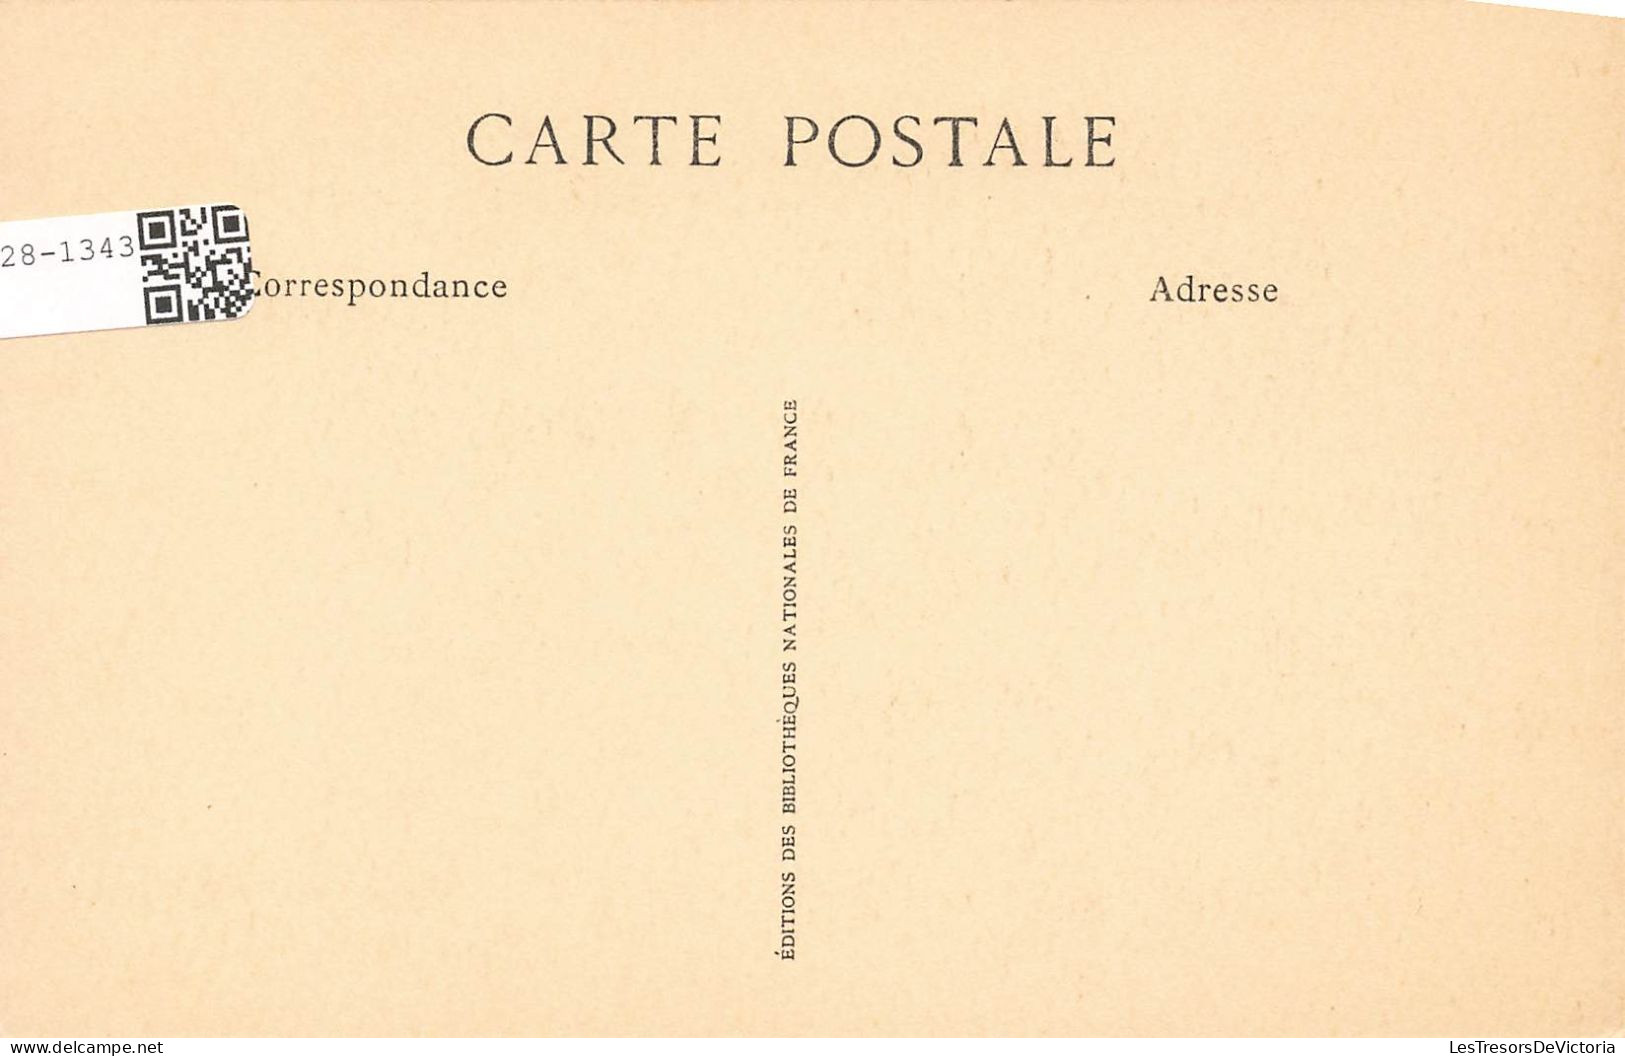 HISTOIRE - Lettre De Napoléon à Marie Louise - Carte Postale Ancienne - Geschichte